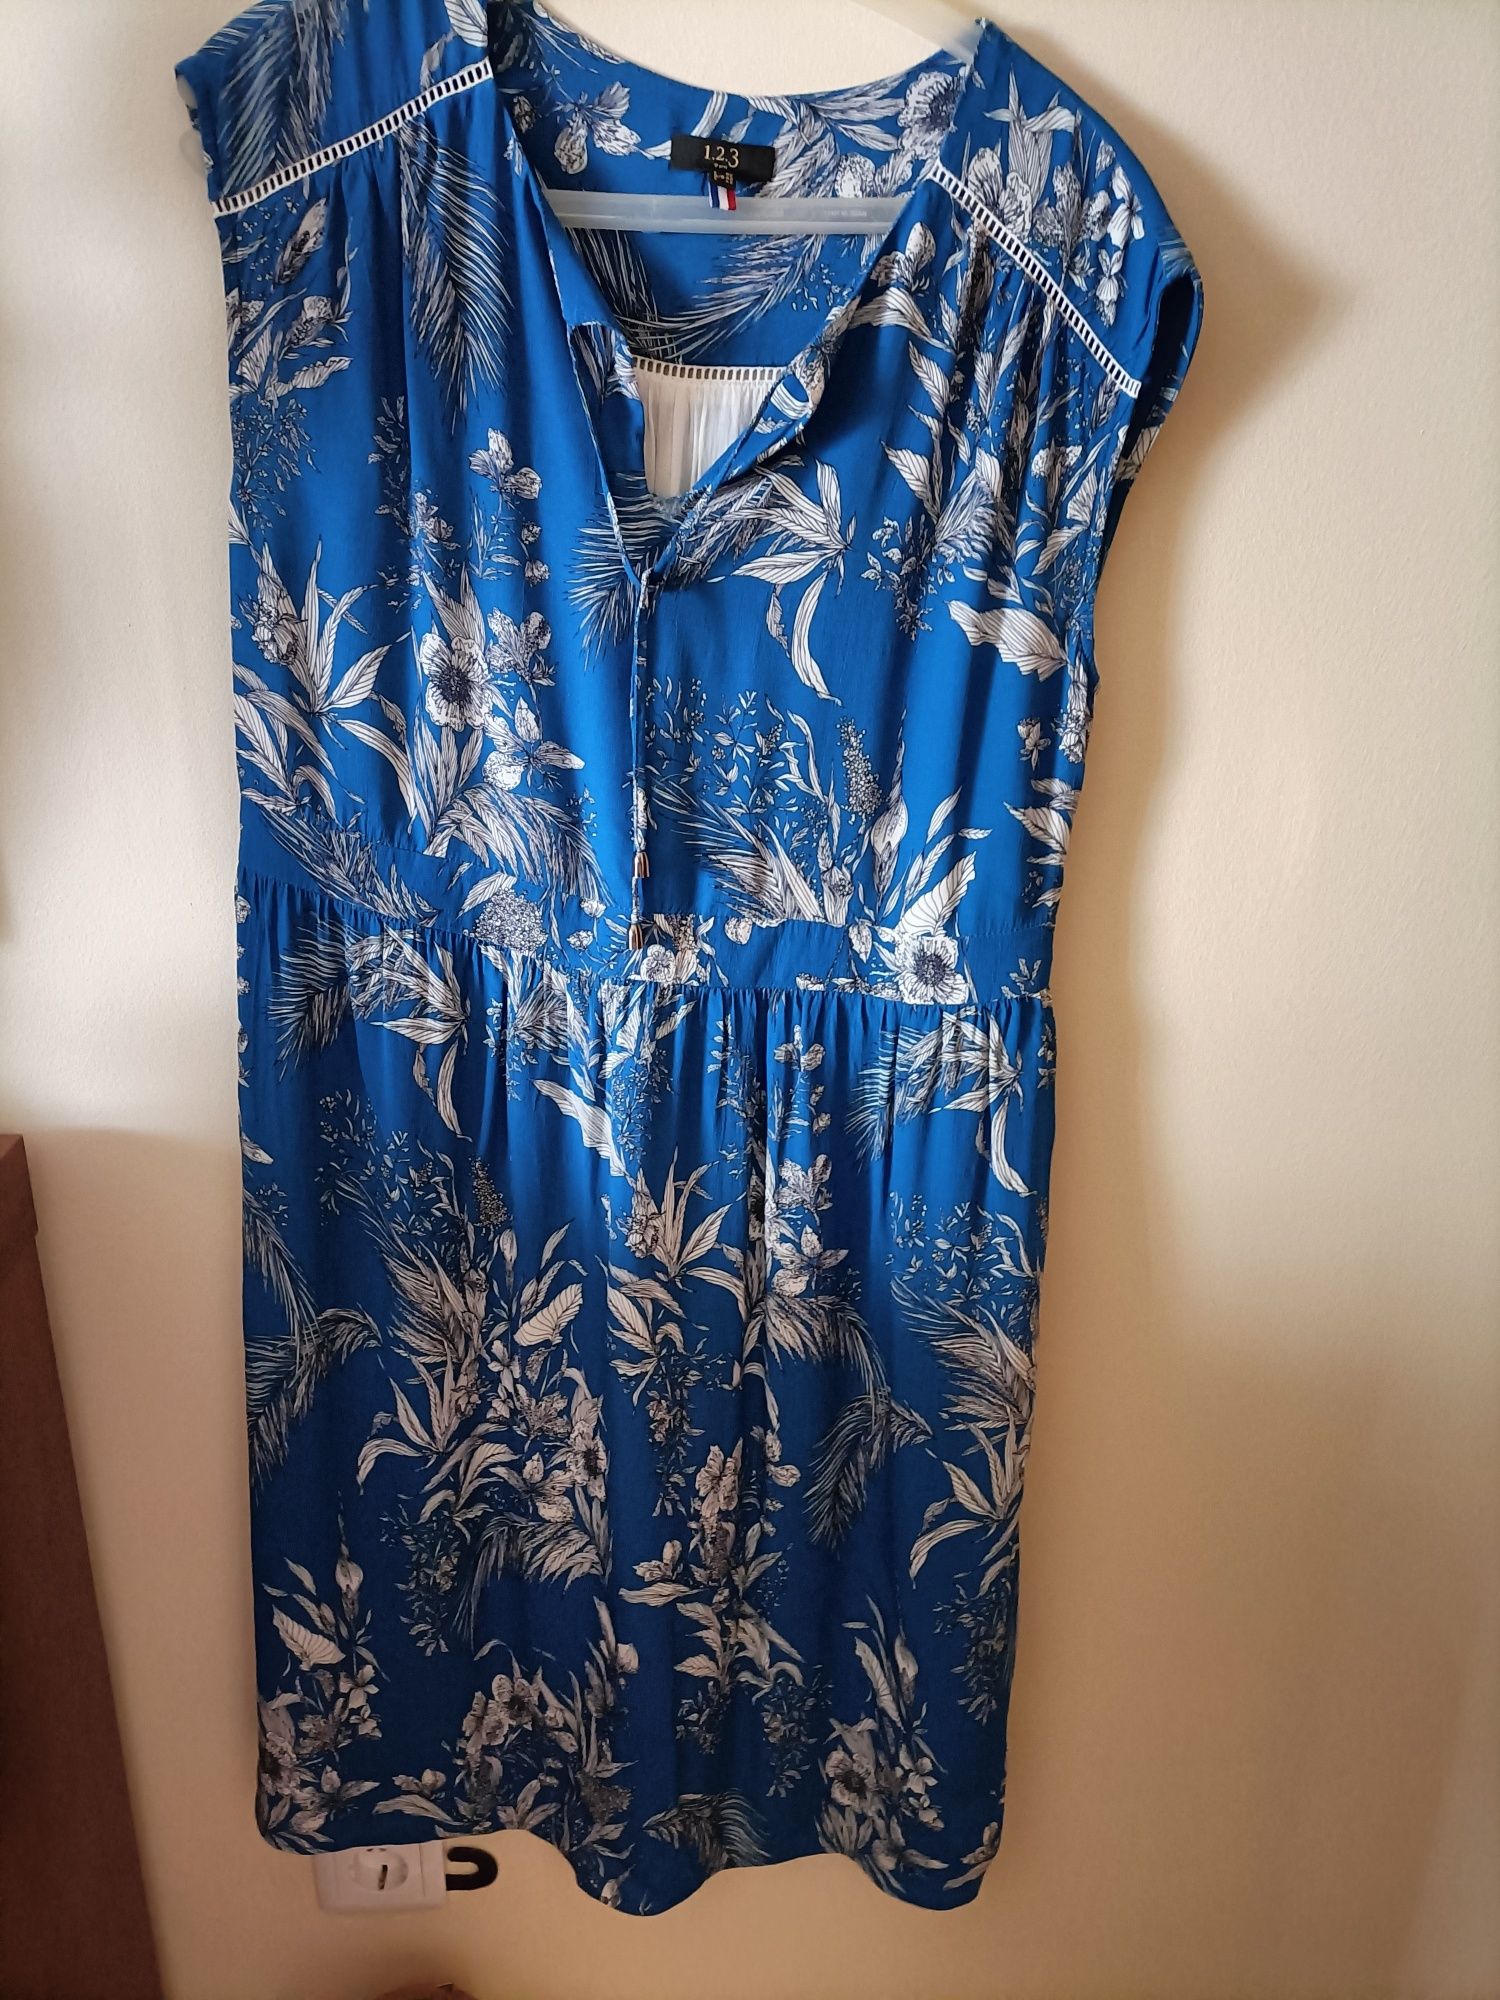 Vestido azul com ramagens